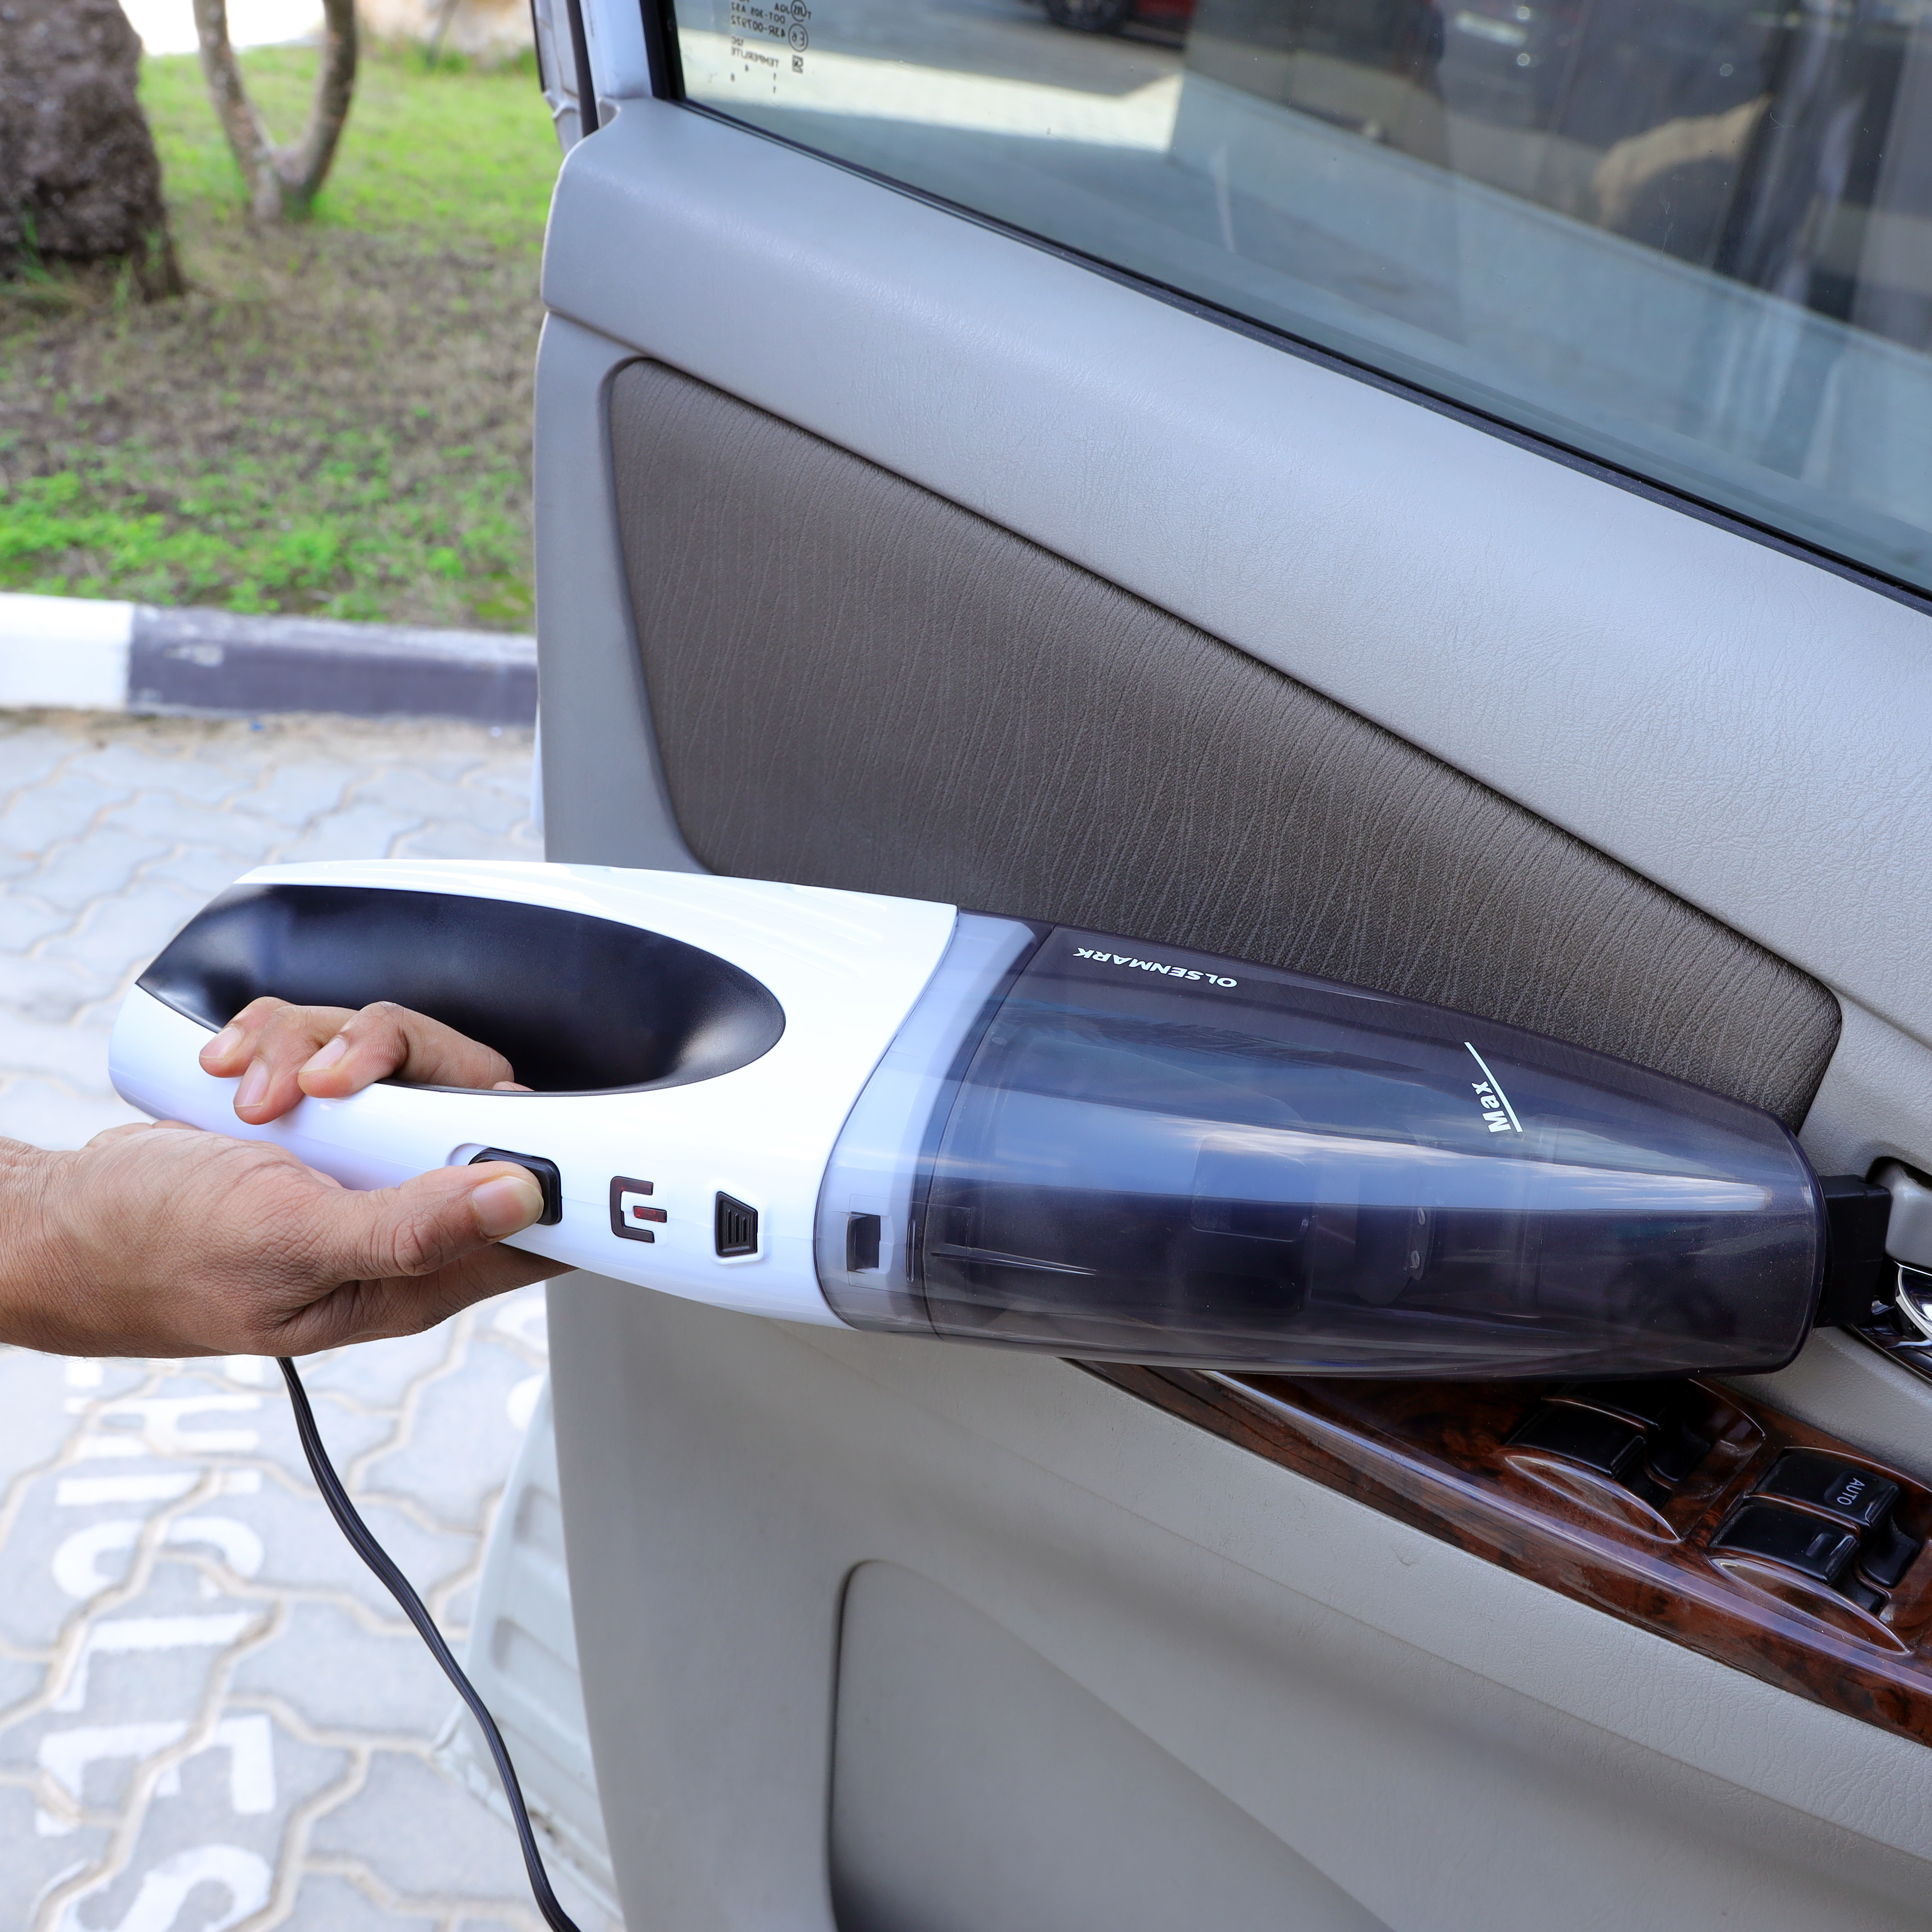 Car vacuum cleaner Handheld wet and dry vacuum cleaner Cordless car home  dual-purpose high-power vacuum cleaner Portable – Eunavi Car Radio Store